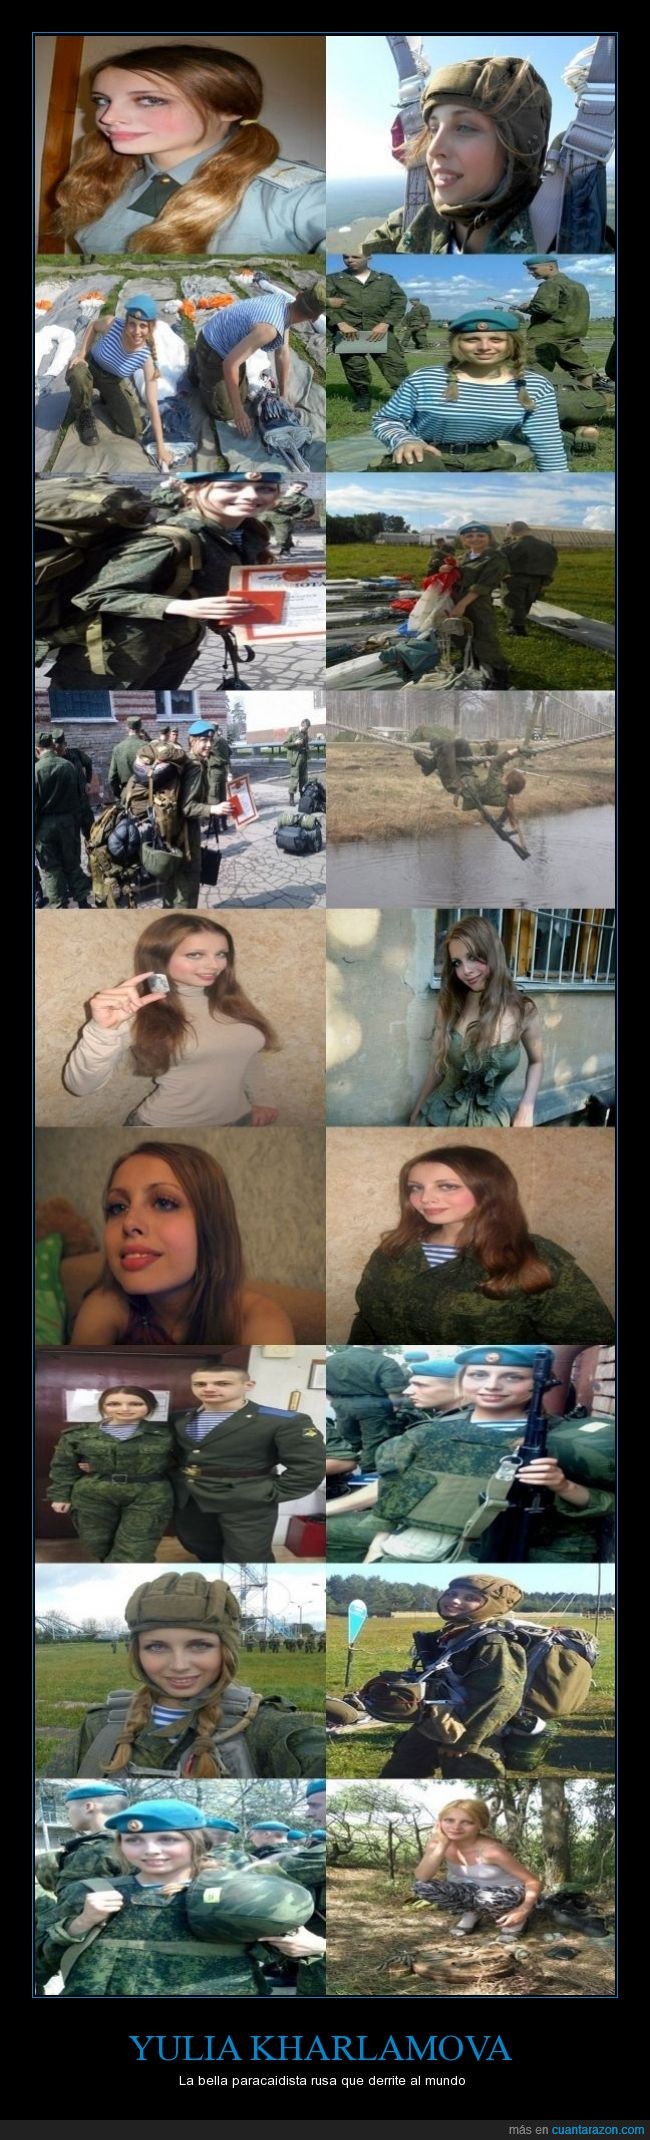 Rusia portal chino Spanish,Yulia Kharlamova,paracaidista,belleza